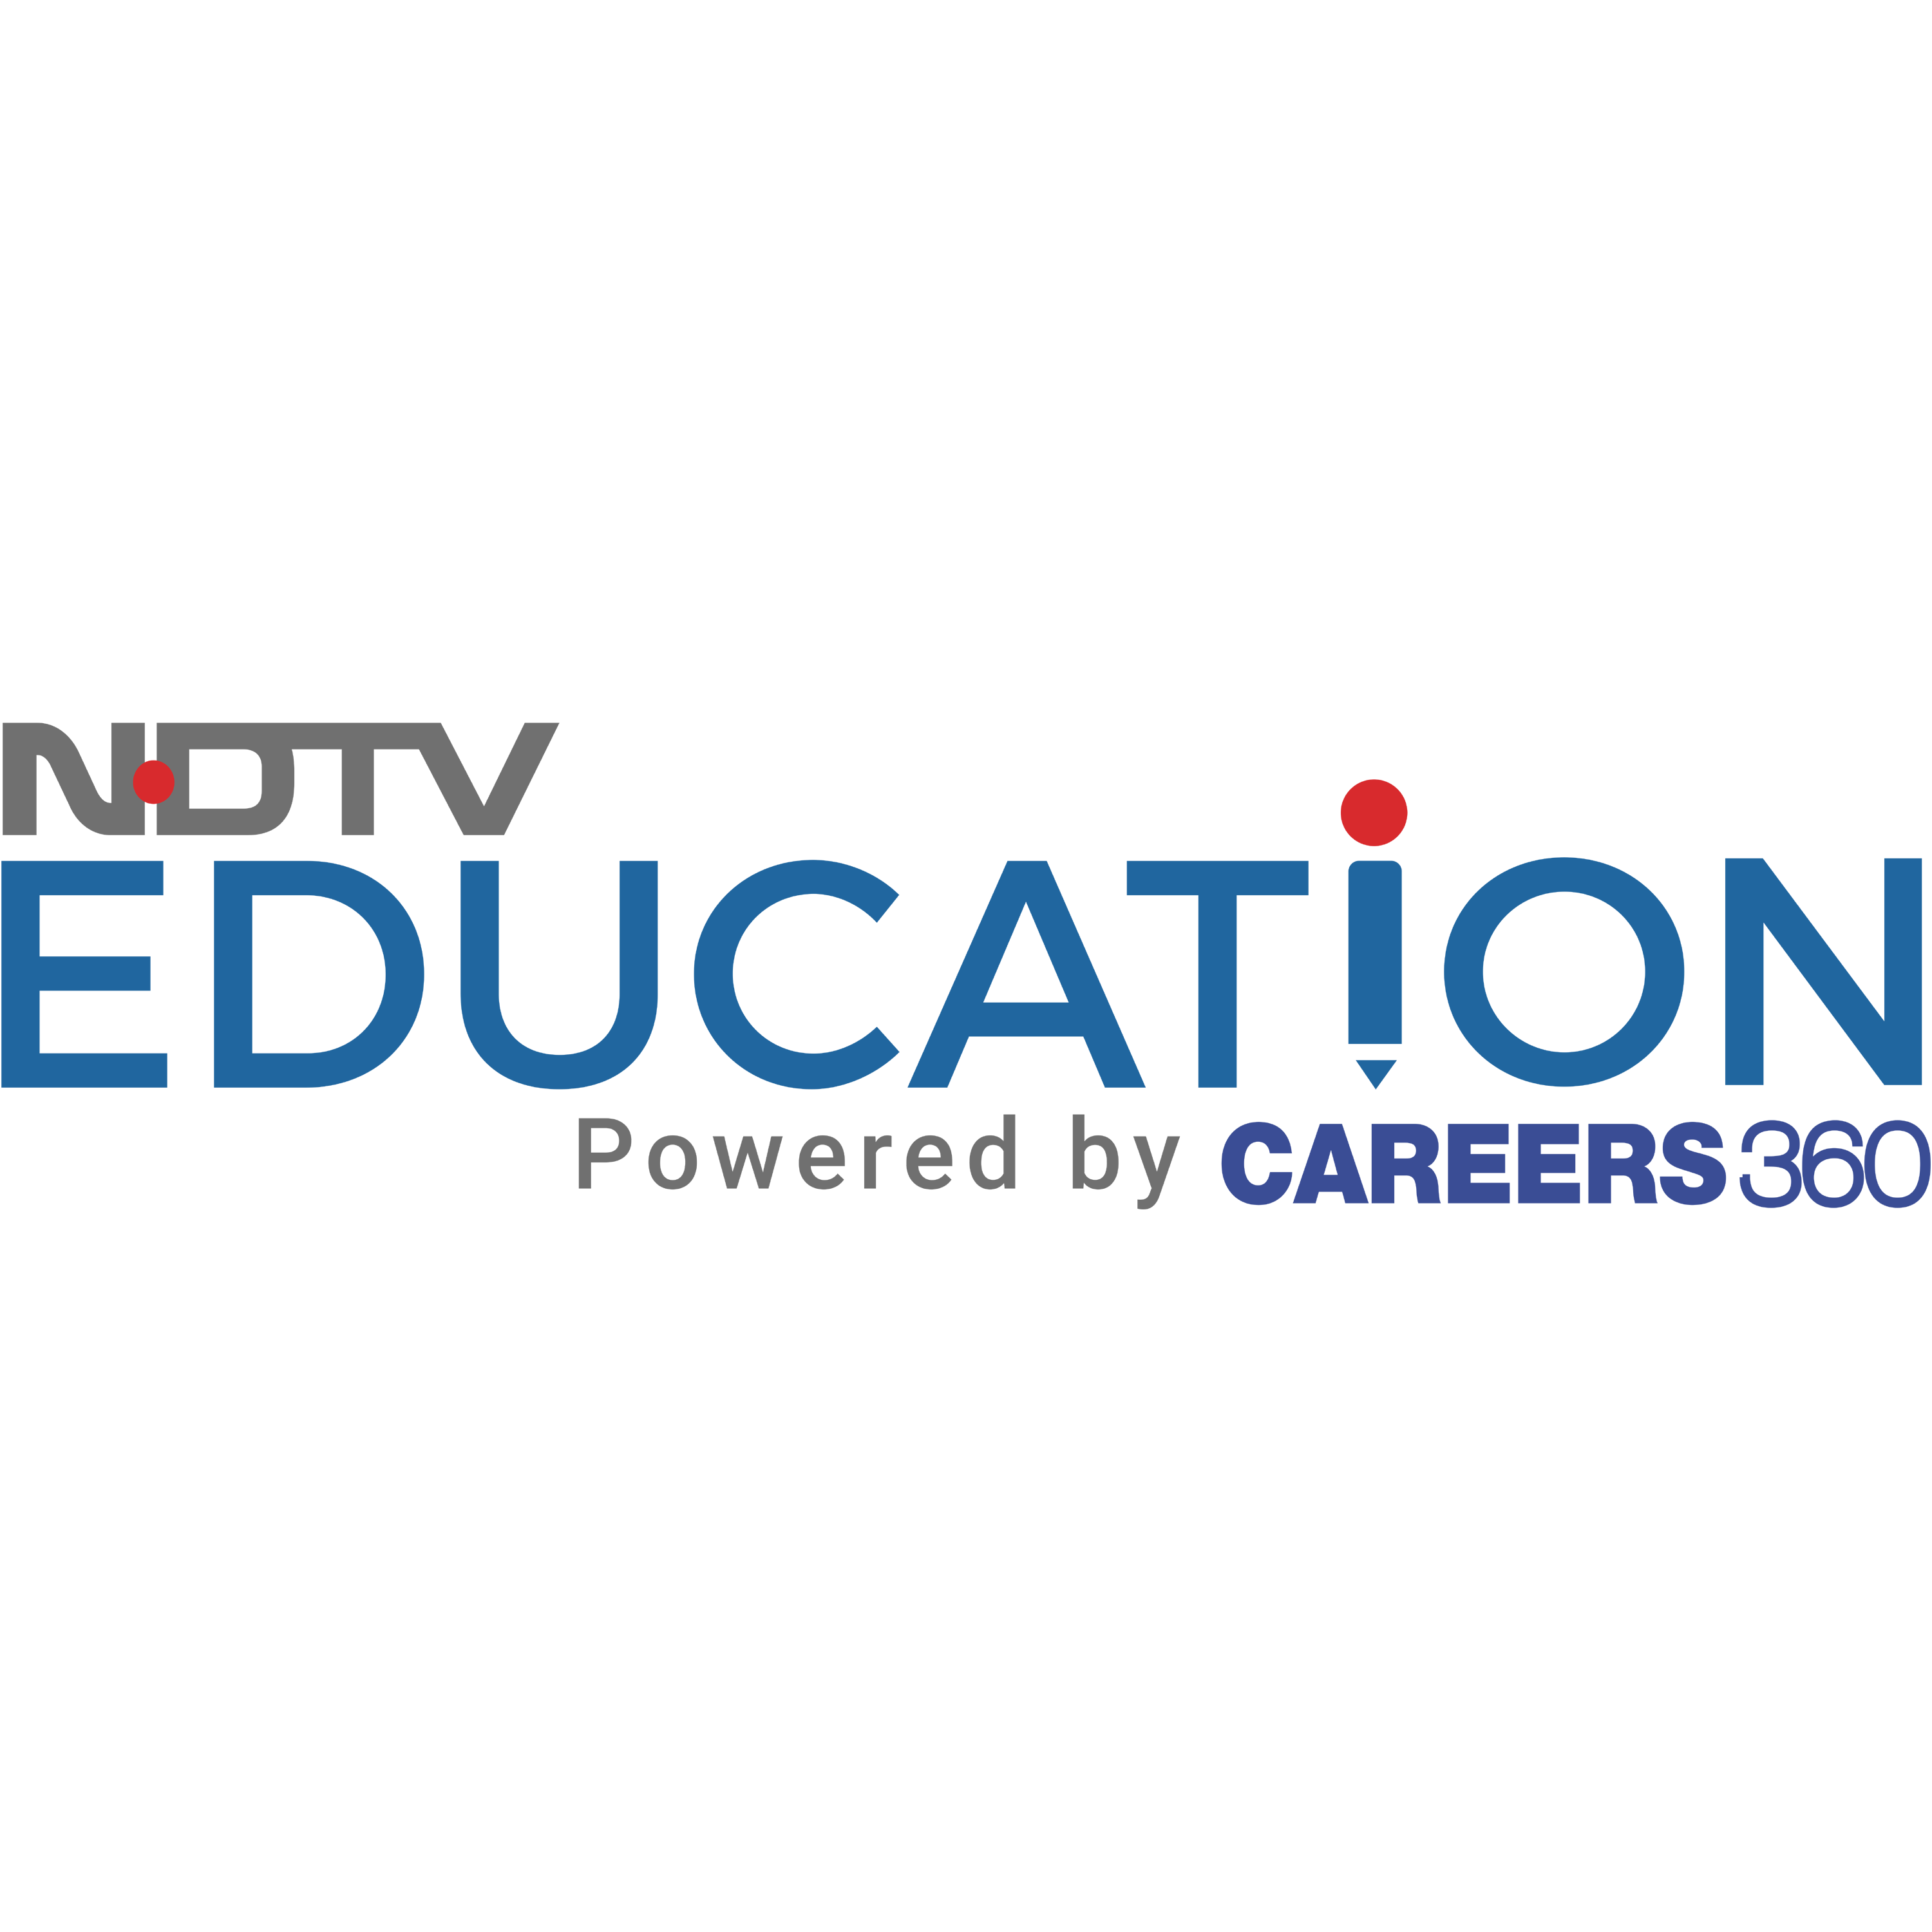 NDTV Education Logo Transparent Image